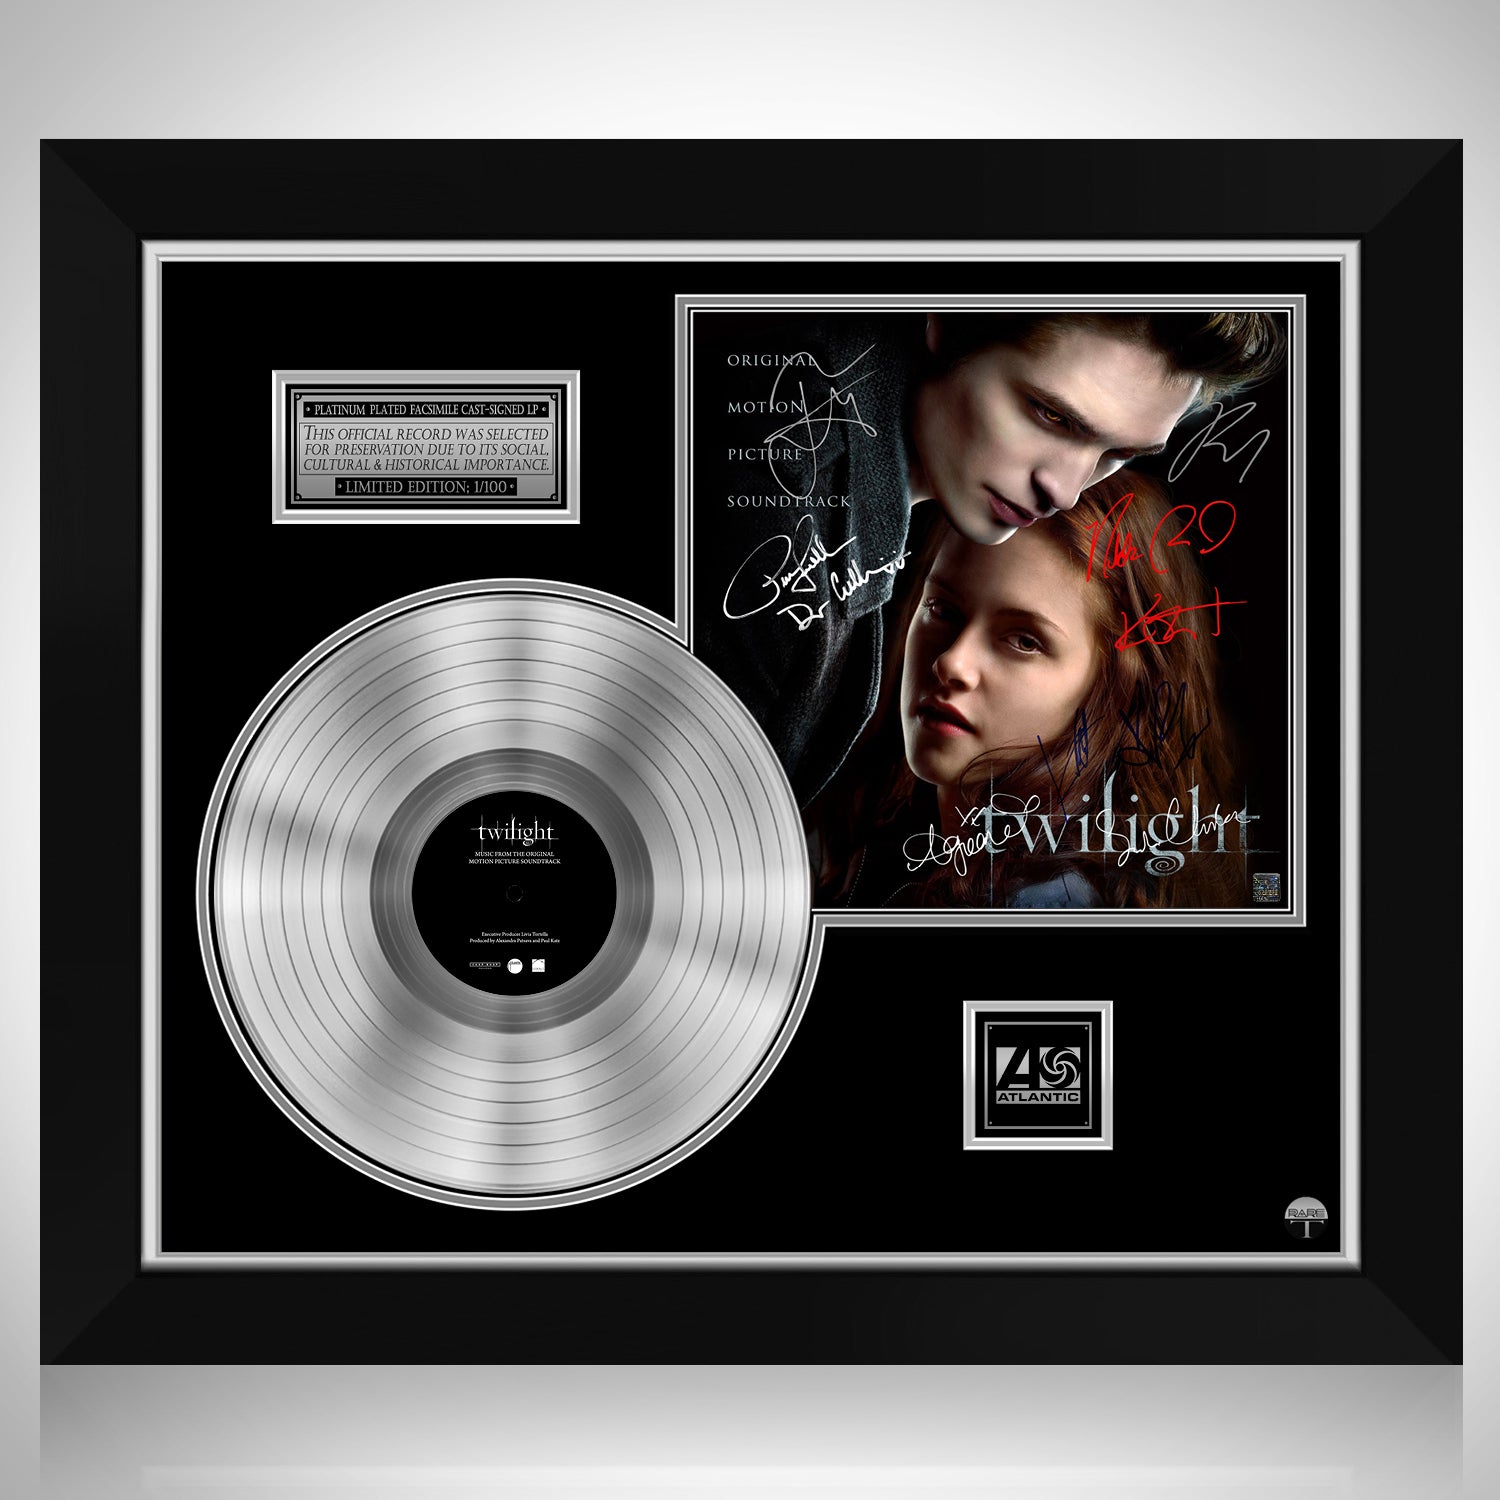 Twilight Original Motion Picture Soundtrack Platinum LP Limited 